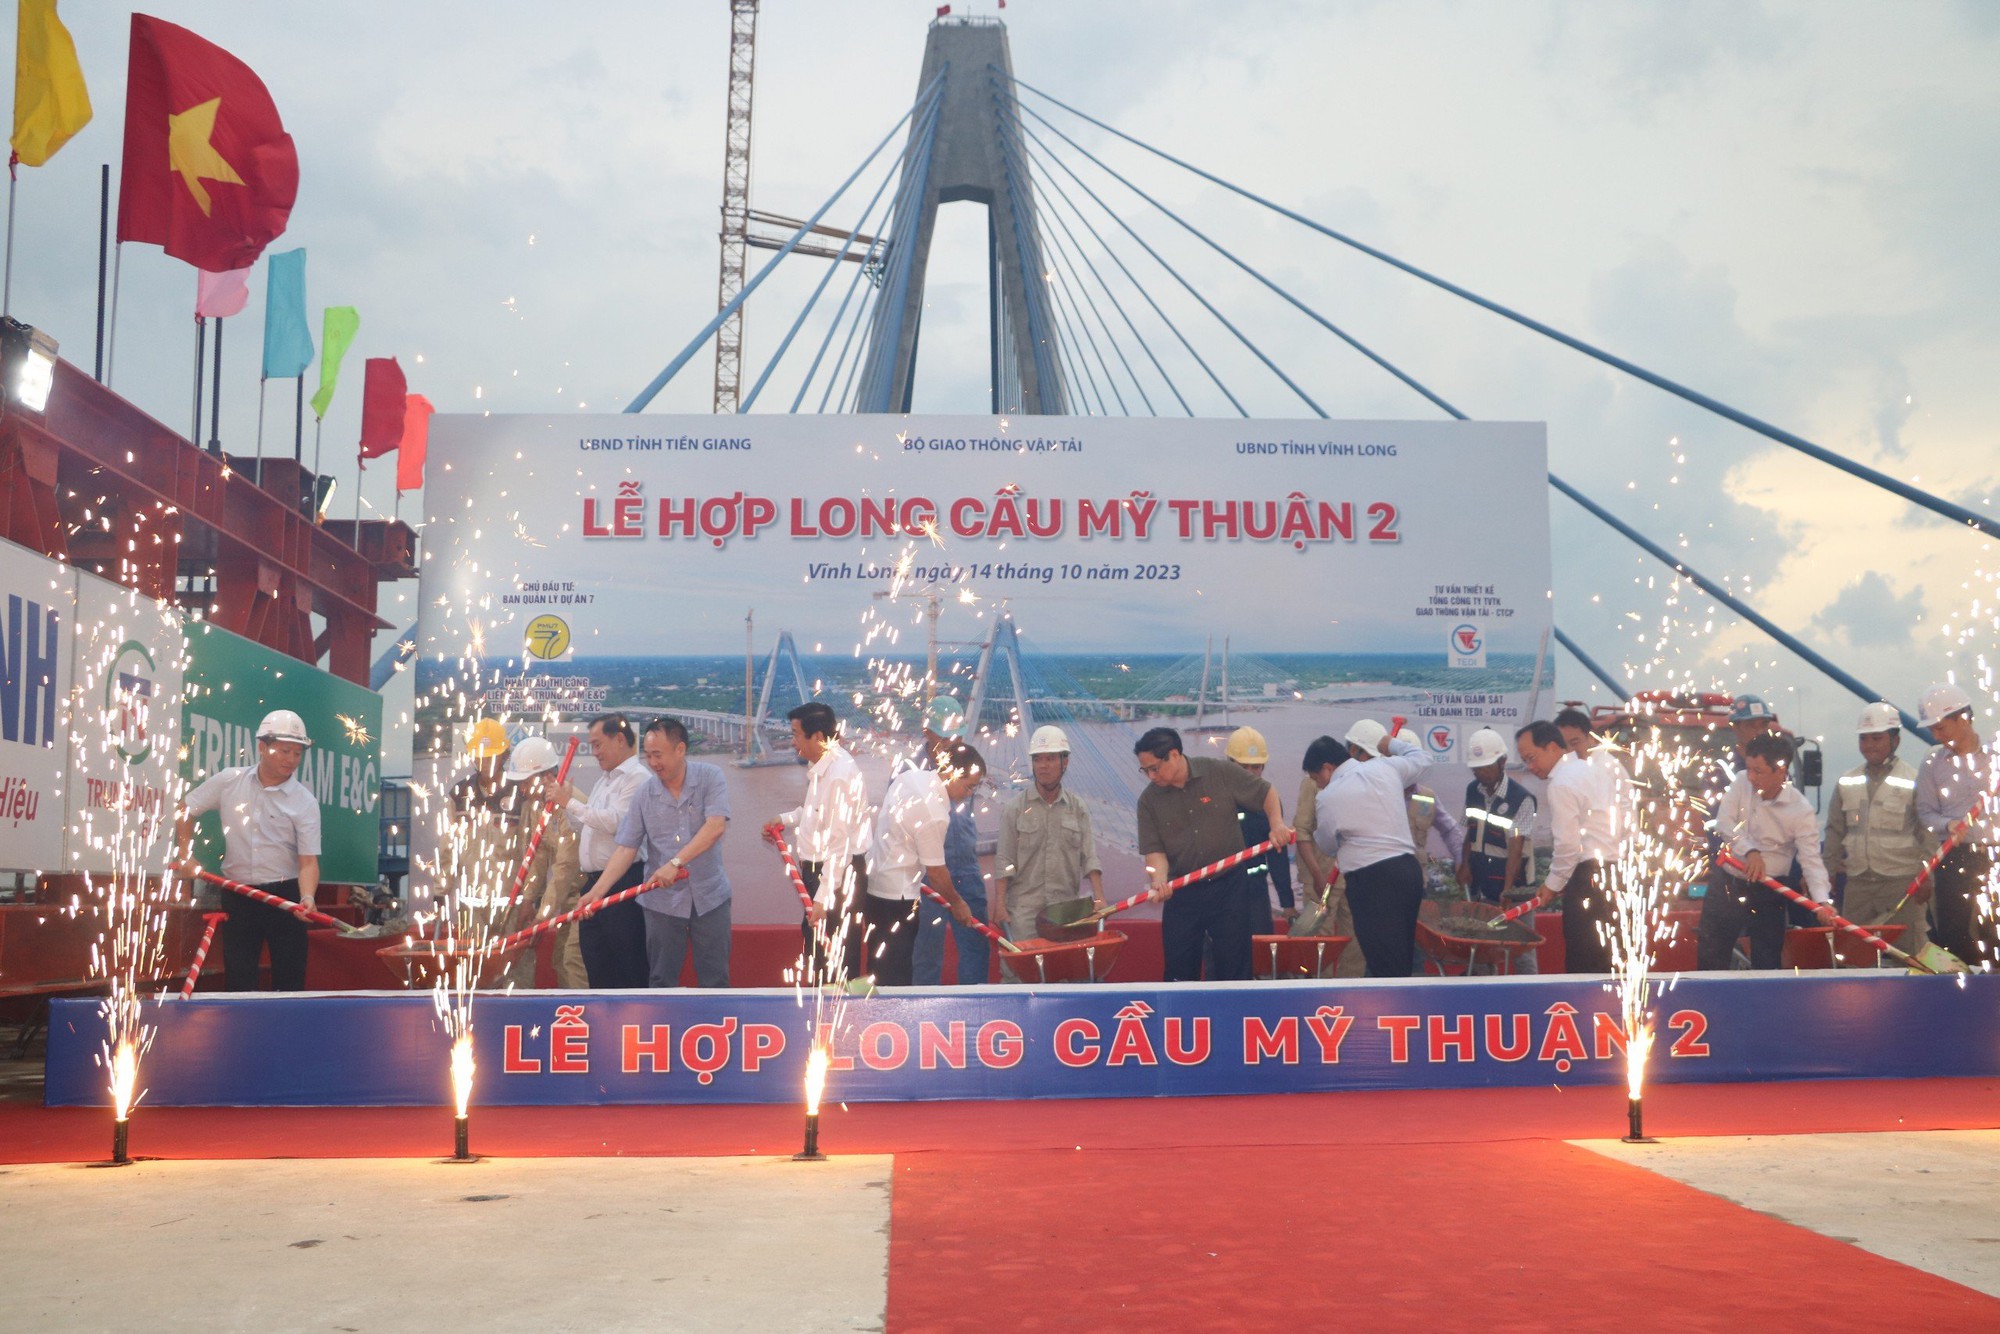 Thủ tướng phát lệnh hợp long cầu Mỹ Thuận 2 - Ảnh 1.